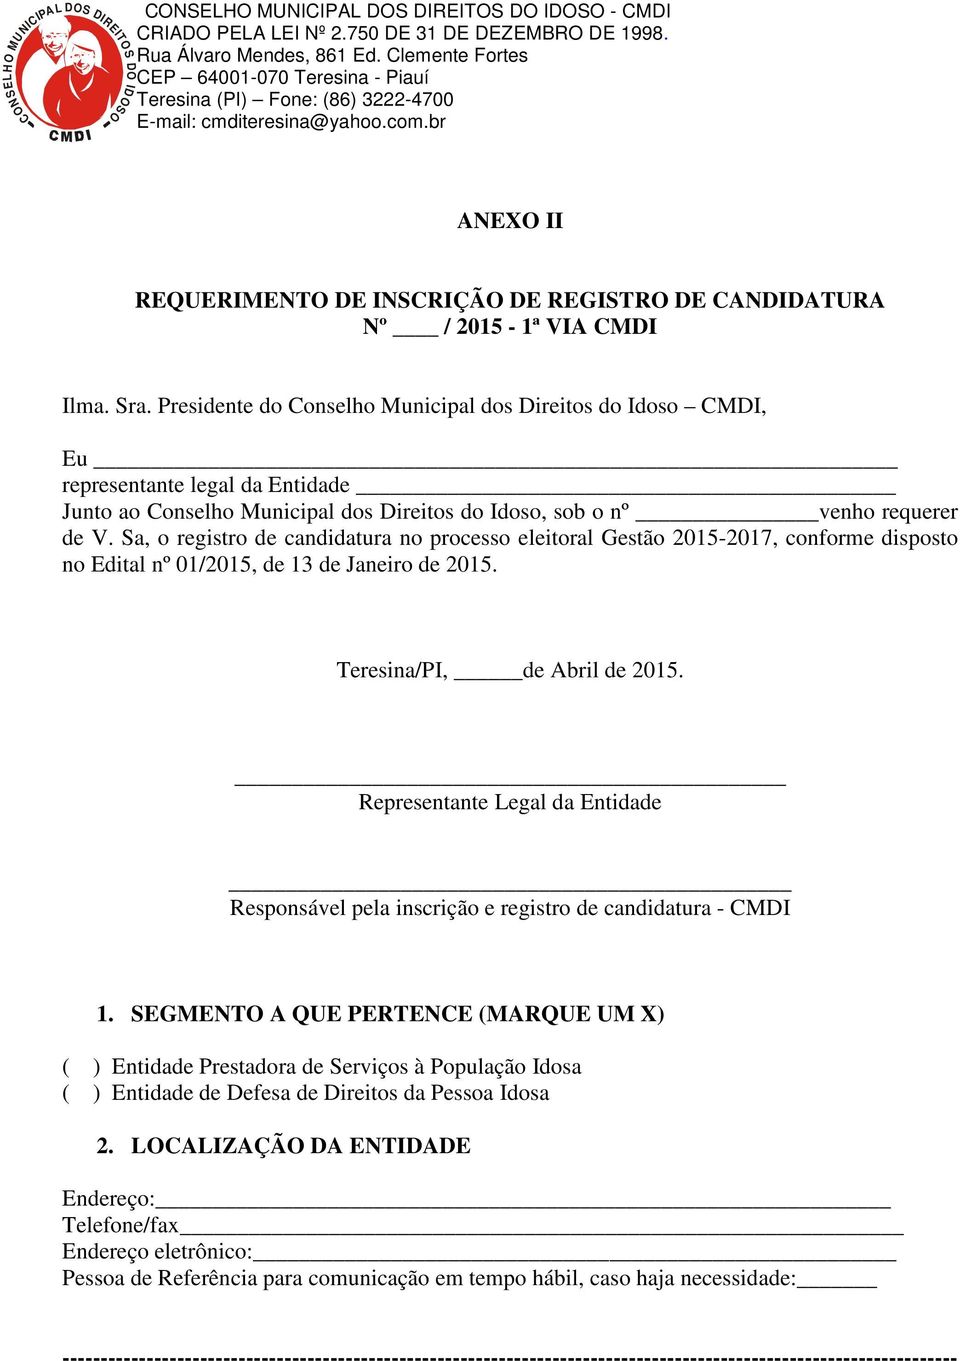 Sa, o registro de candidatura no processo eleitoral Gestão 2015-2017, conforme disposto no Edital nº 01/2015, de 13 de Janeiro de 2015. Teresina/PI, de Abril de 2015.